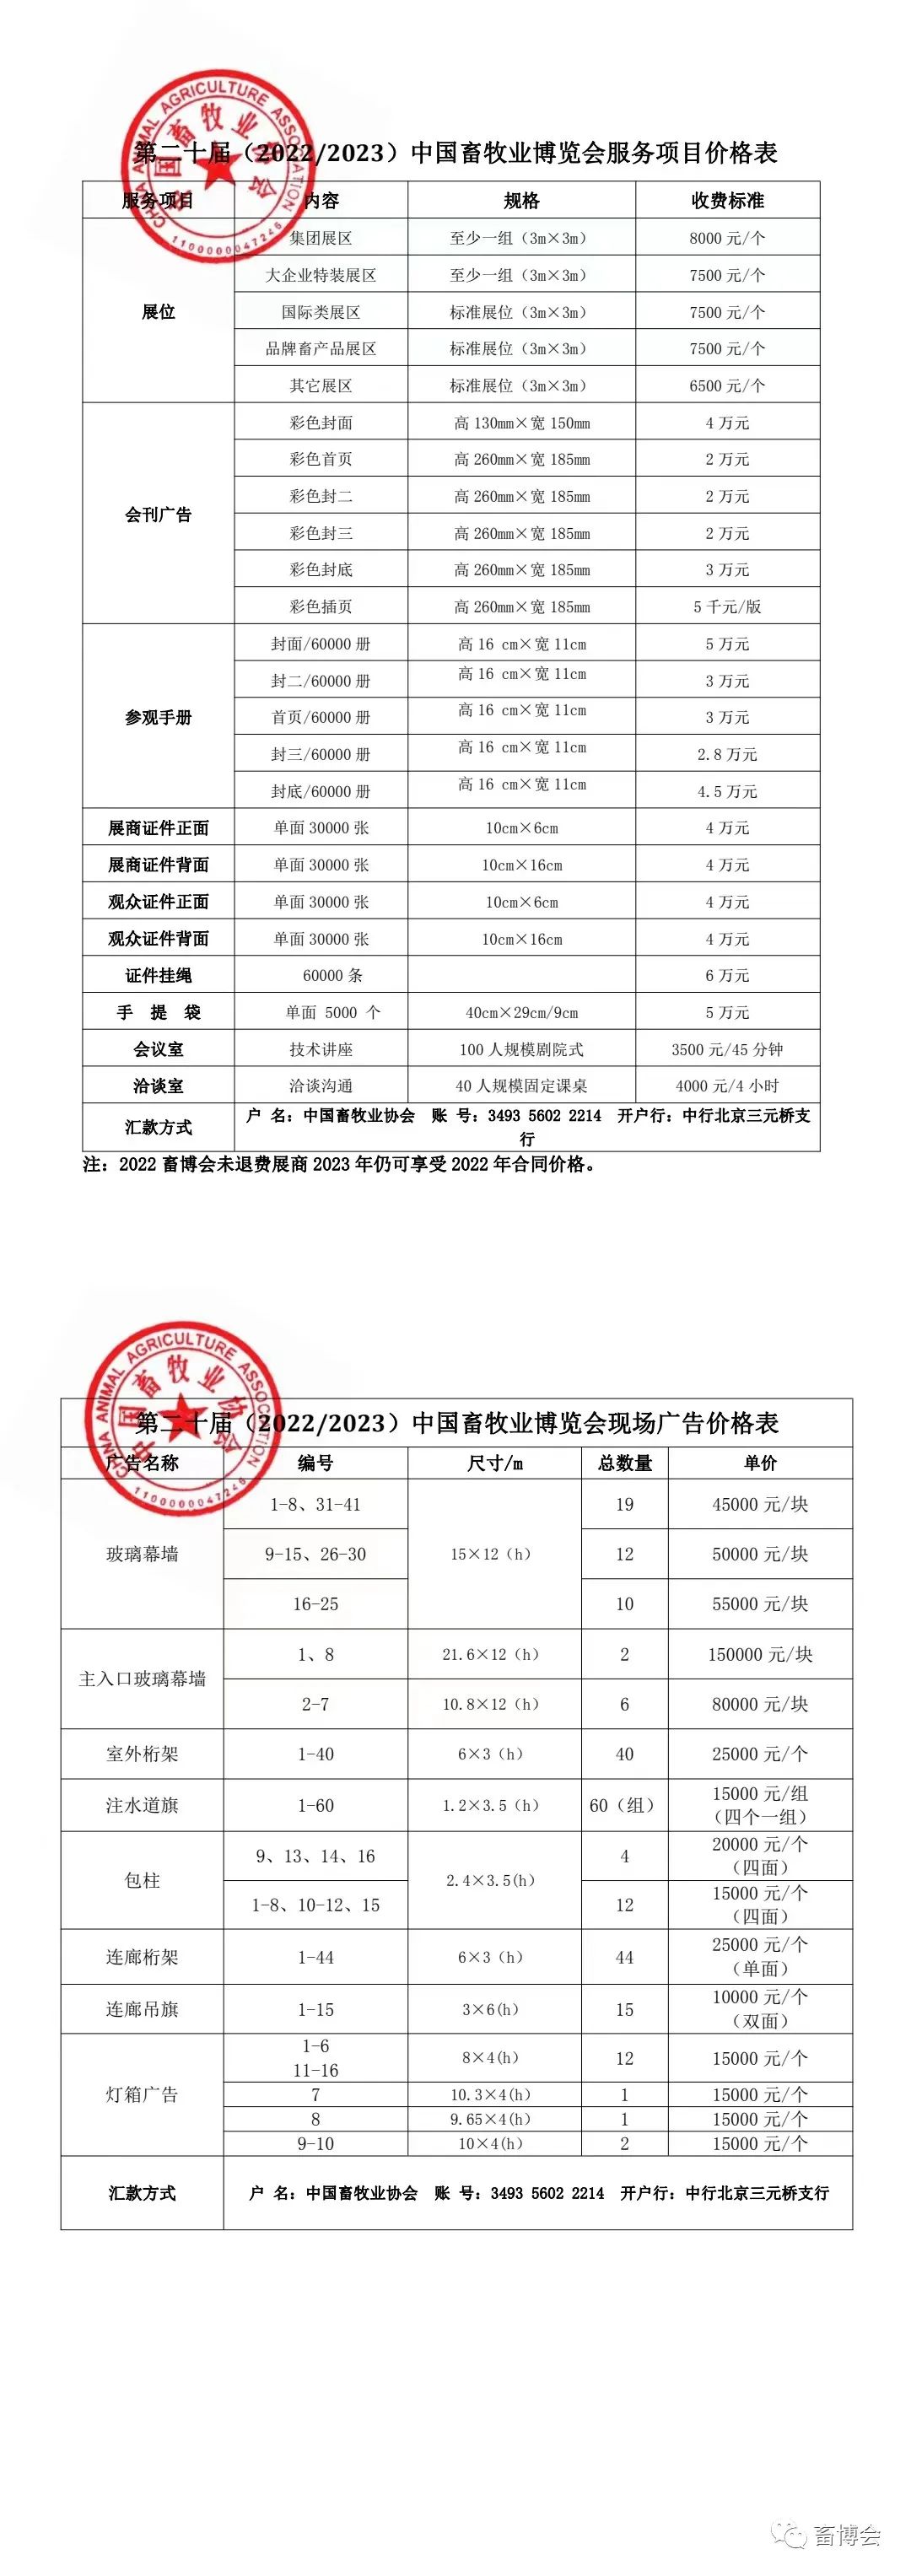 中國畜牧業博覽會服務項目價格表公布